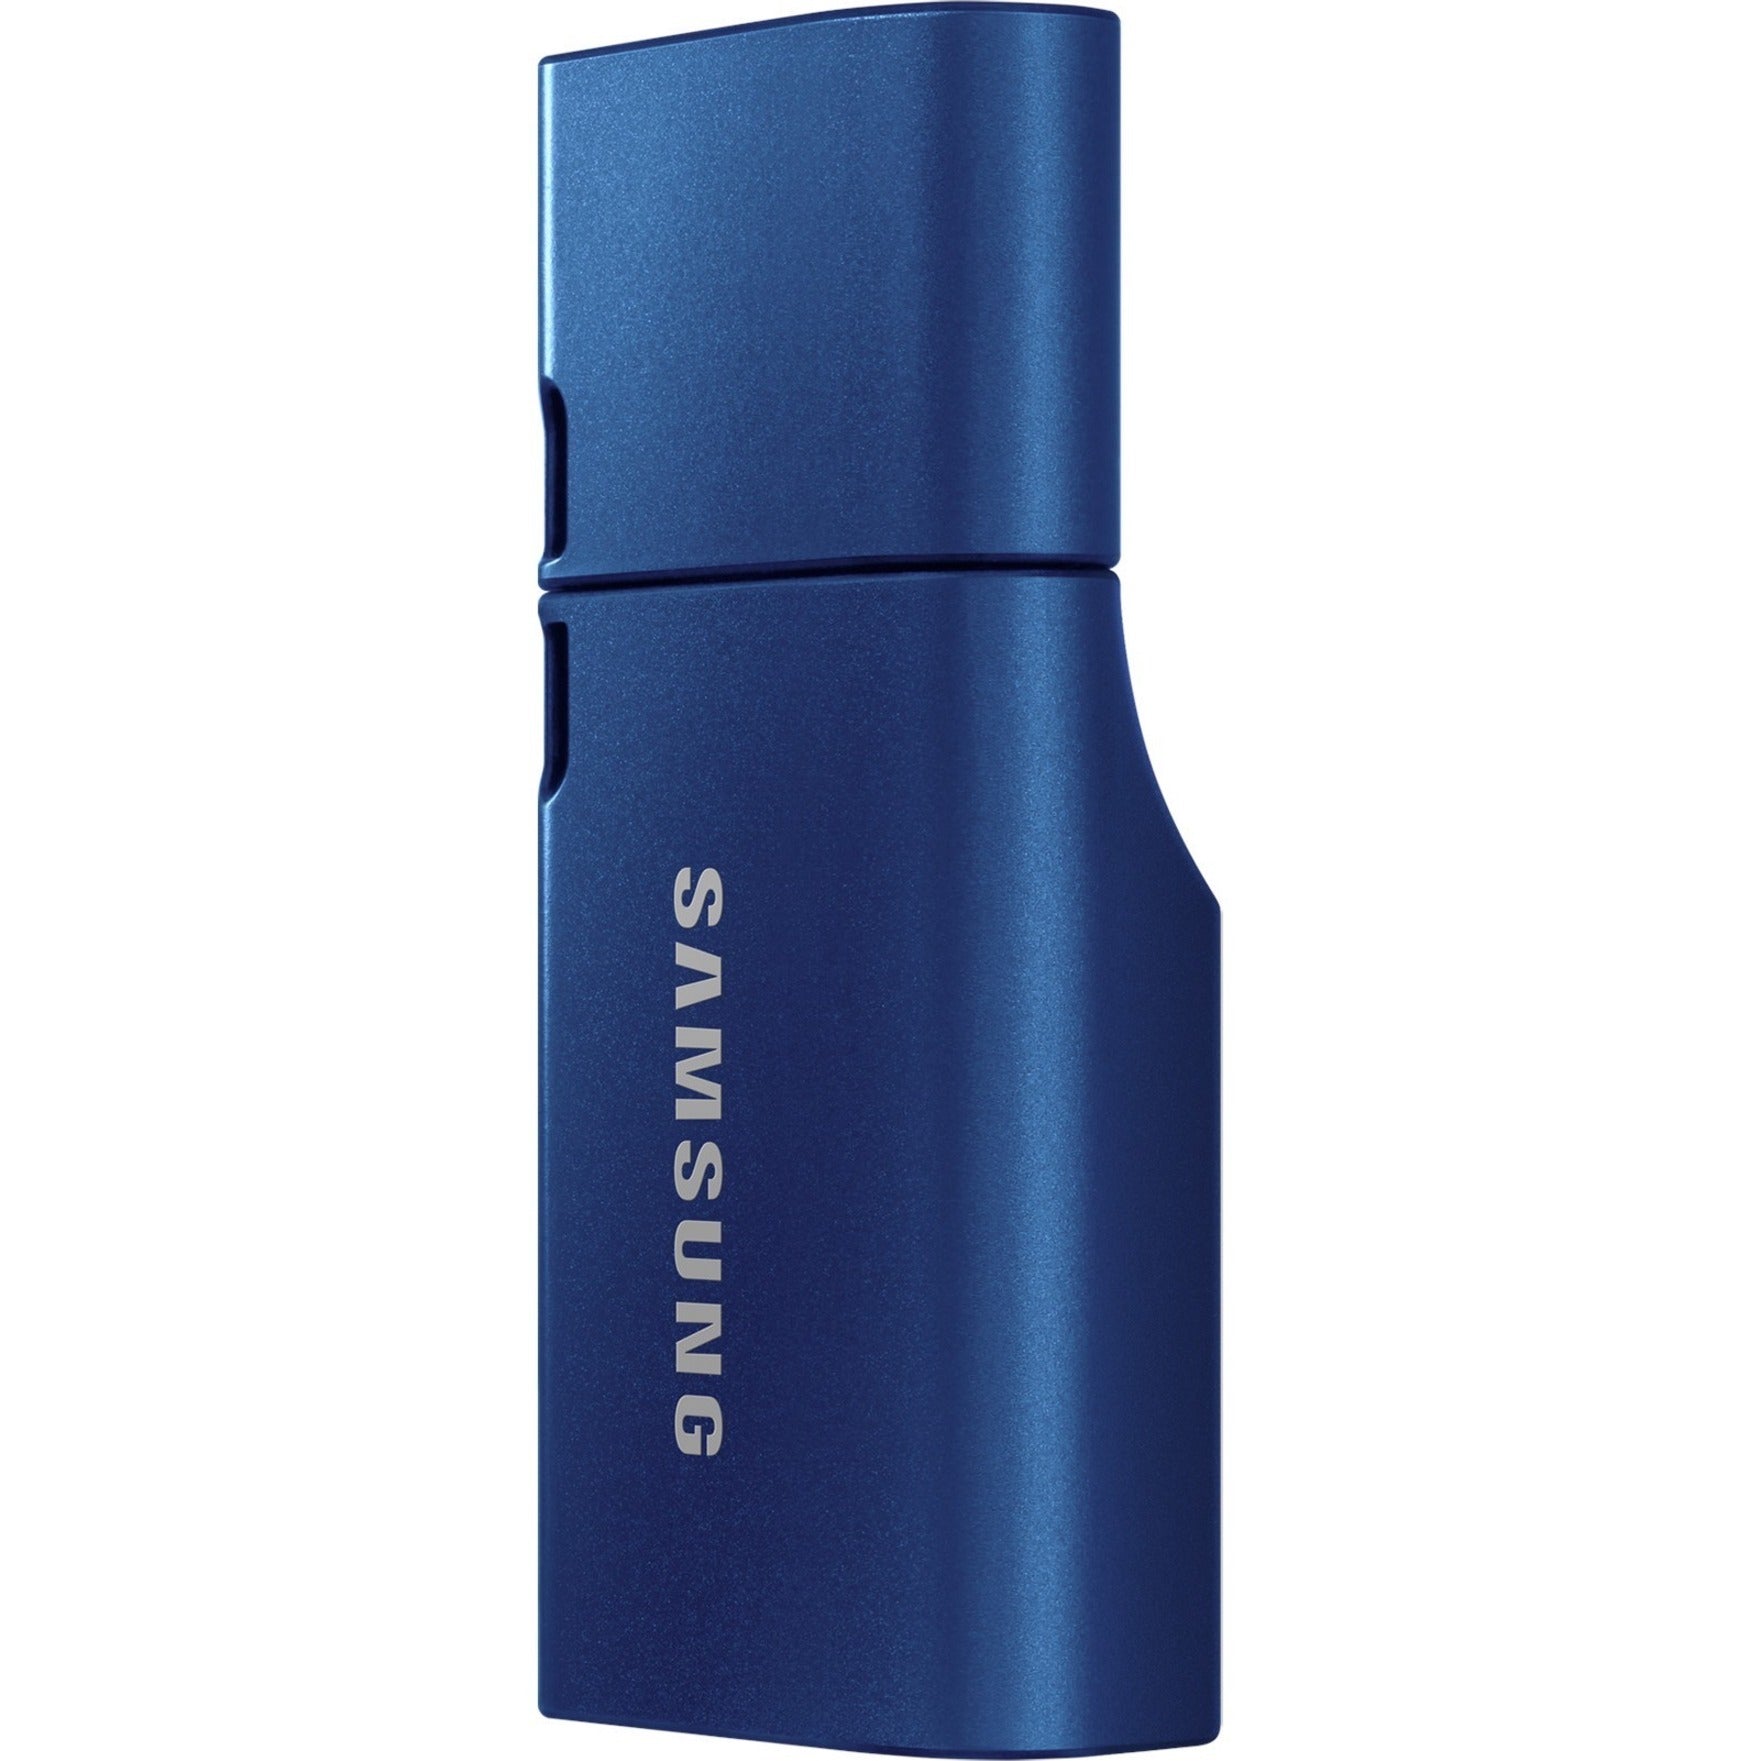 Samsung Type-C 256GB USB 3.2 Flash Drive (MUF-256DA/AM)